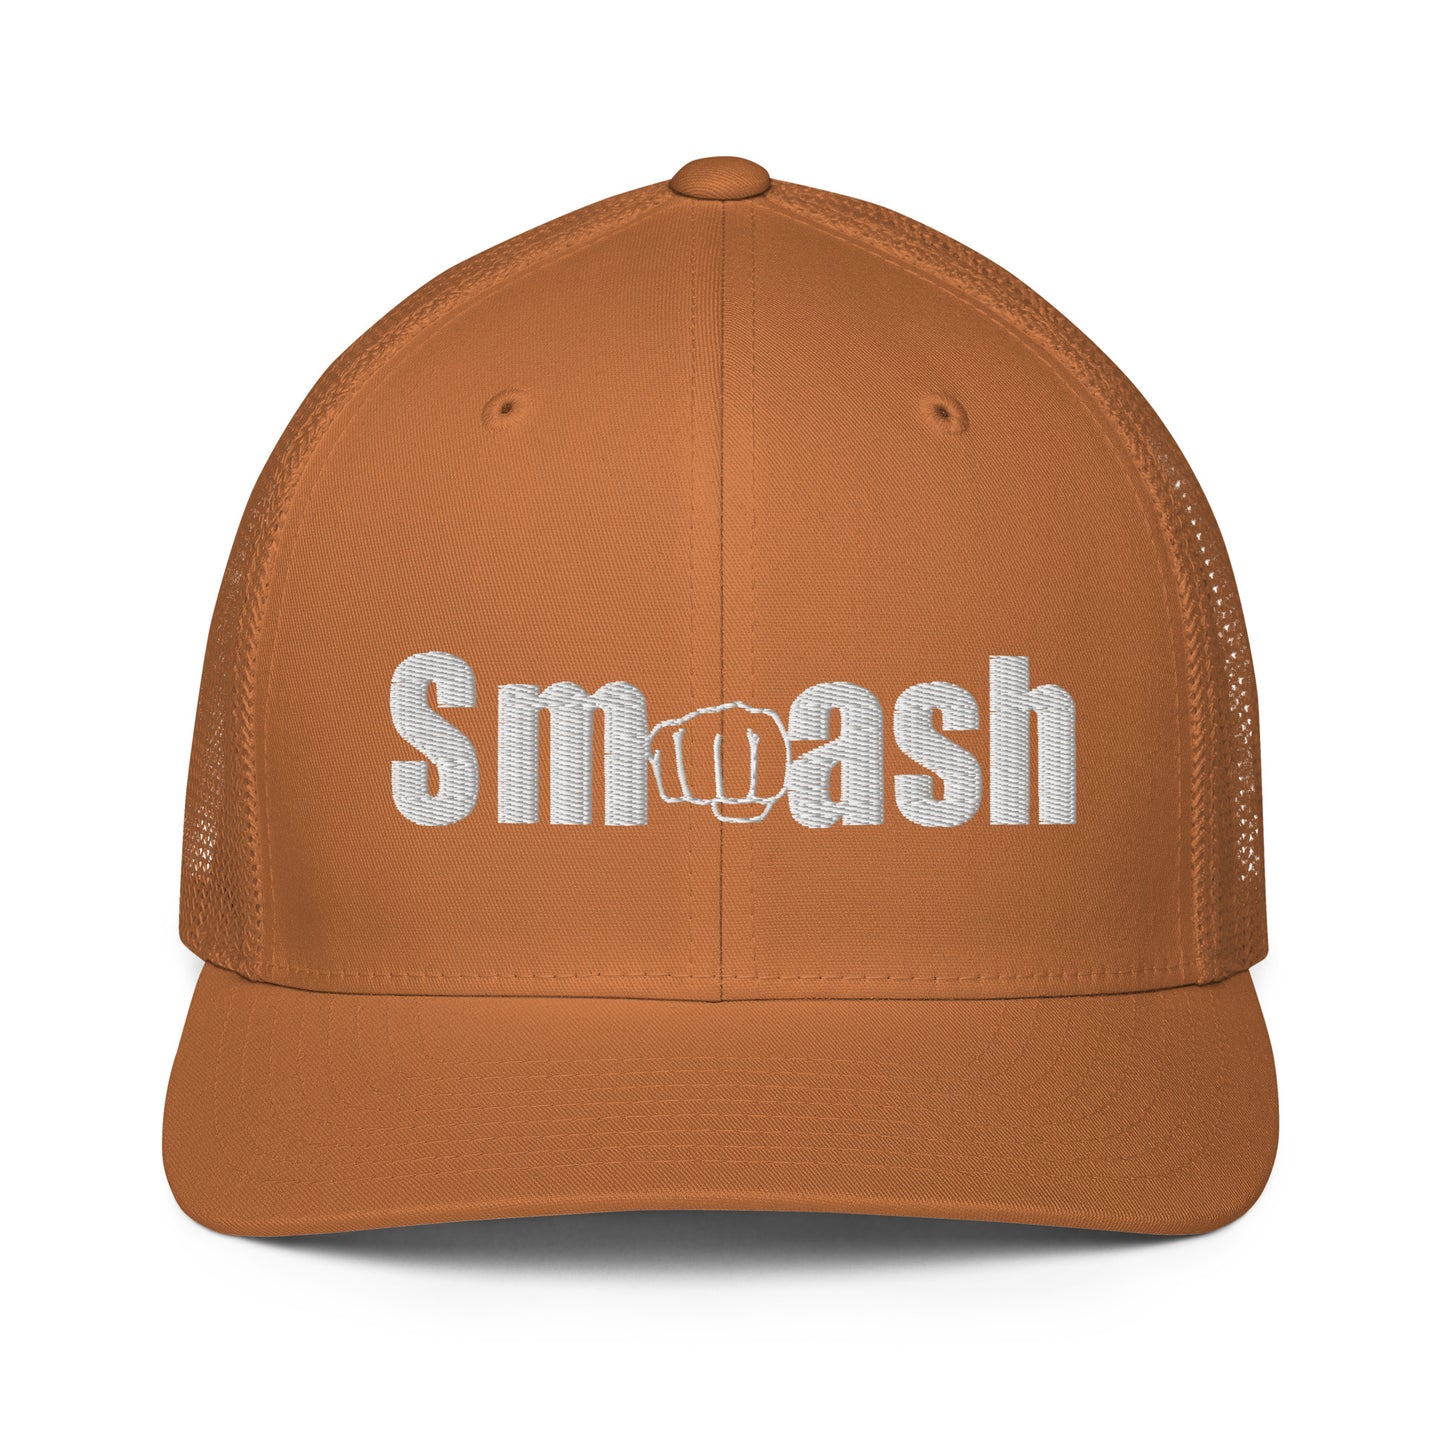 Smash Flex Fit Mesh back trucker cap